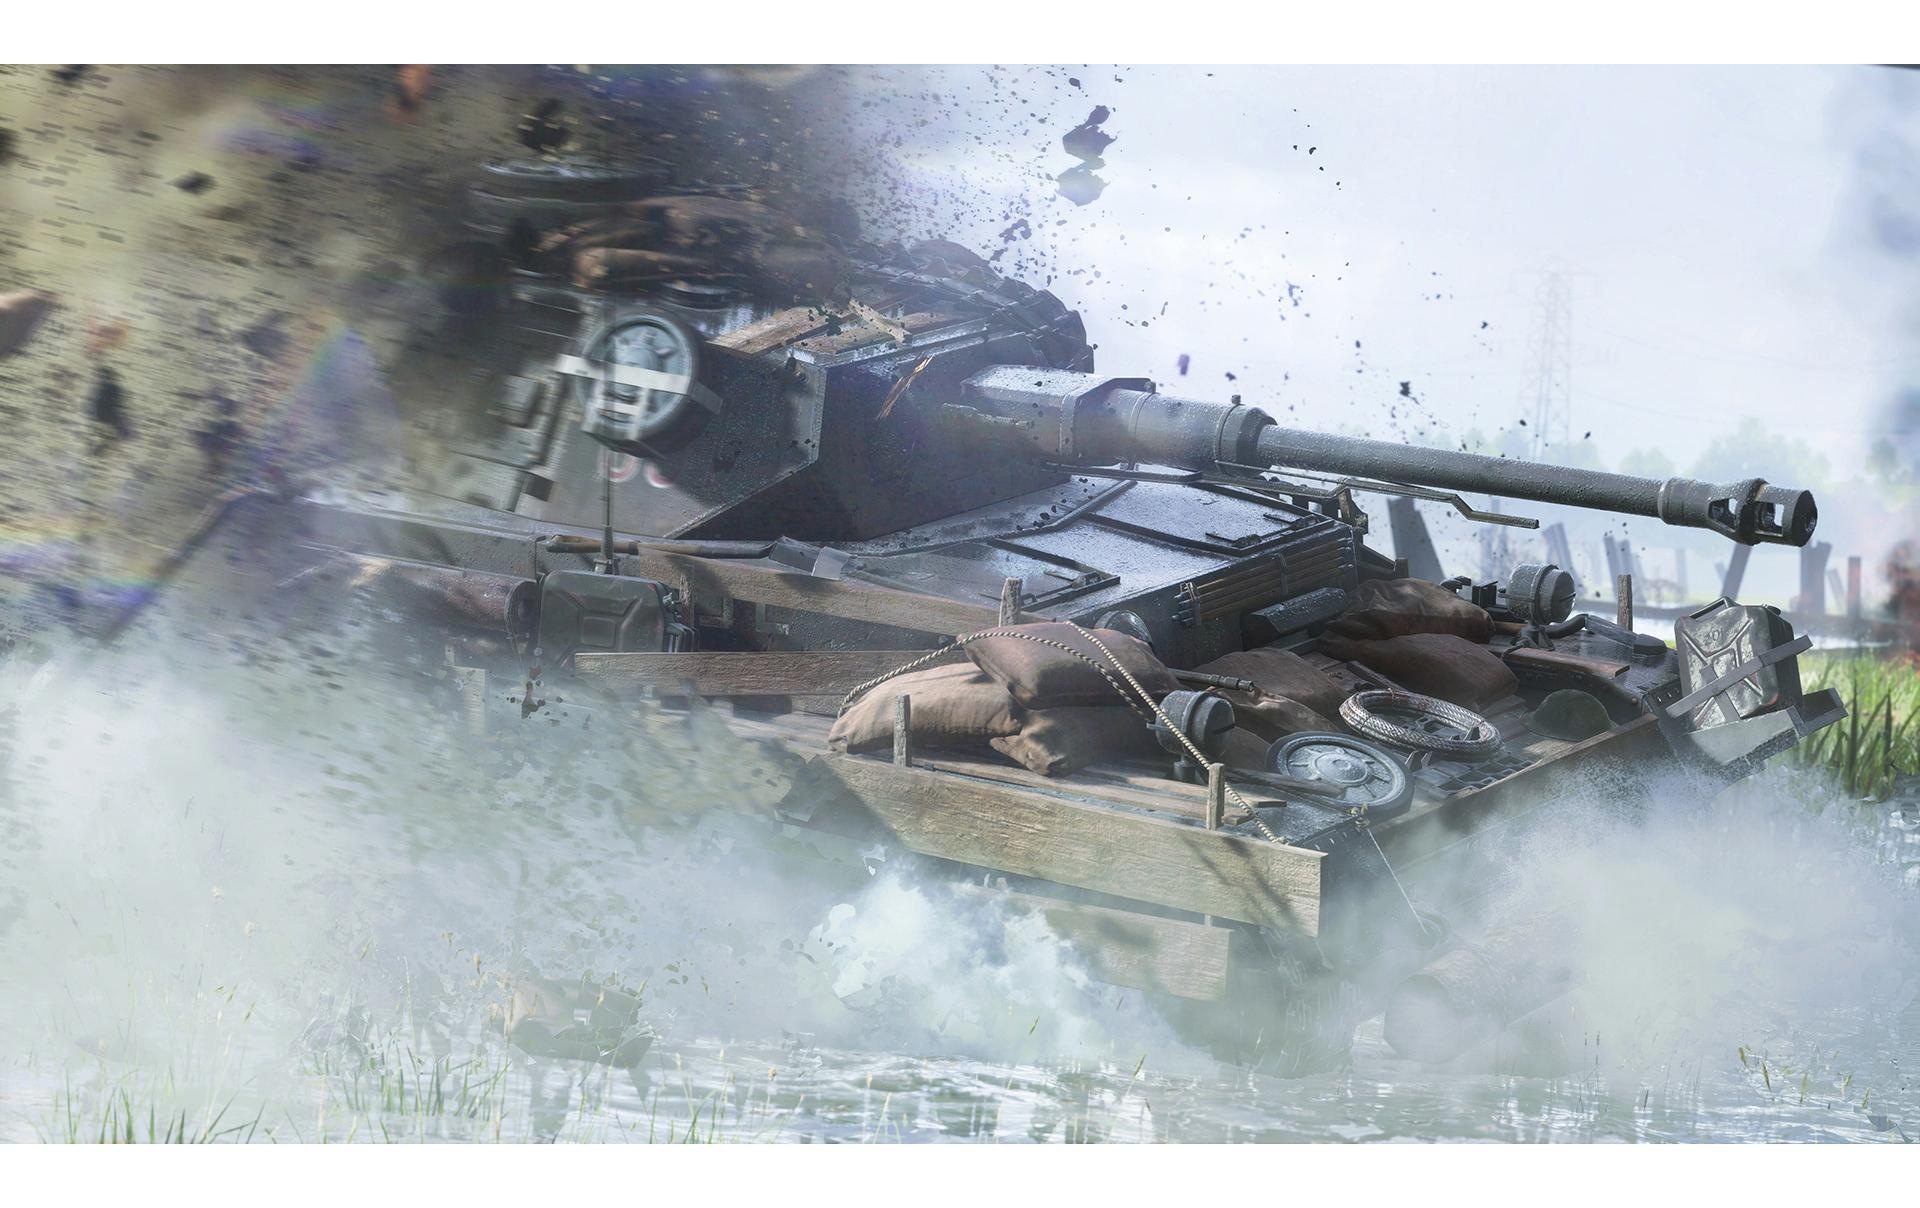 Electronic Arts Spielesoftware »Battlefield 5«, PC, Standard Edition